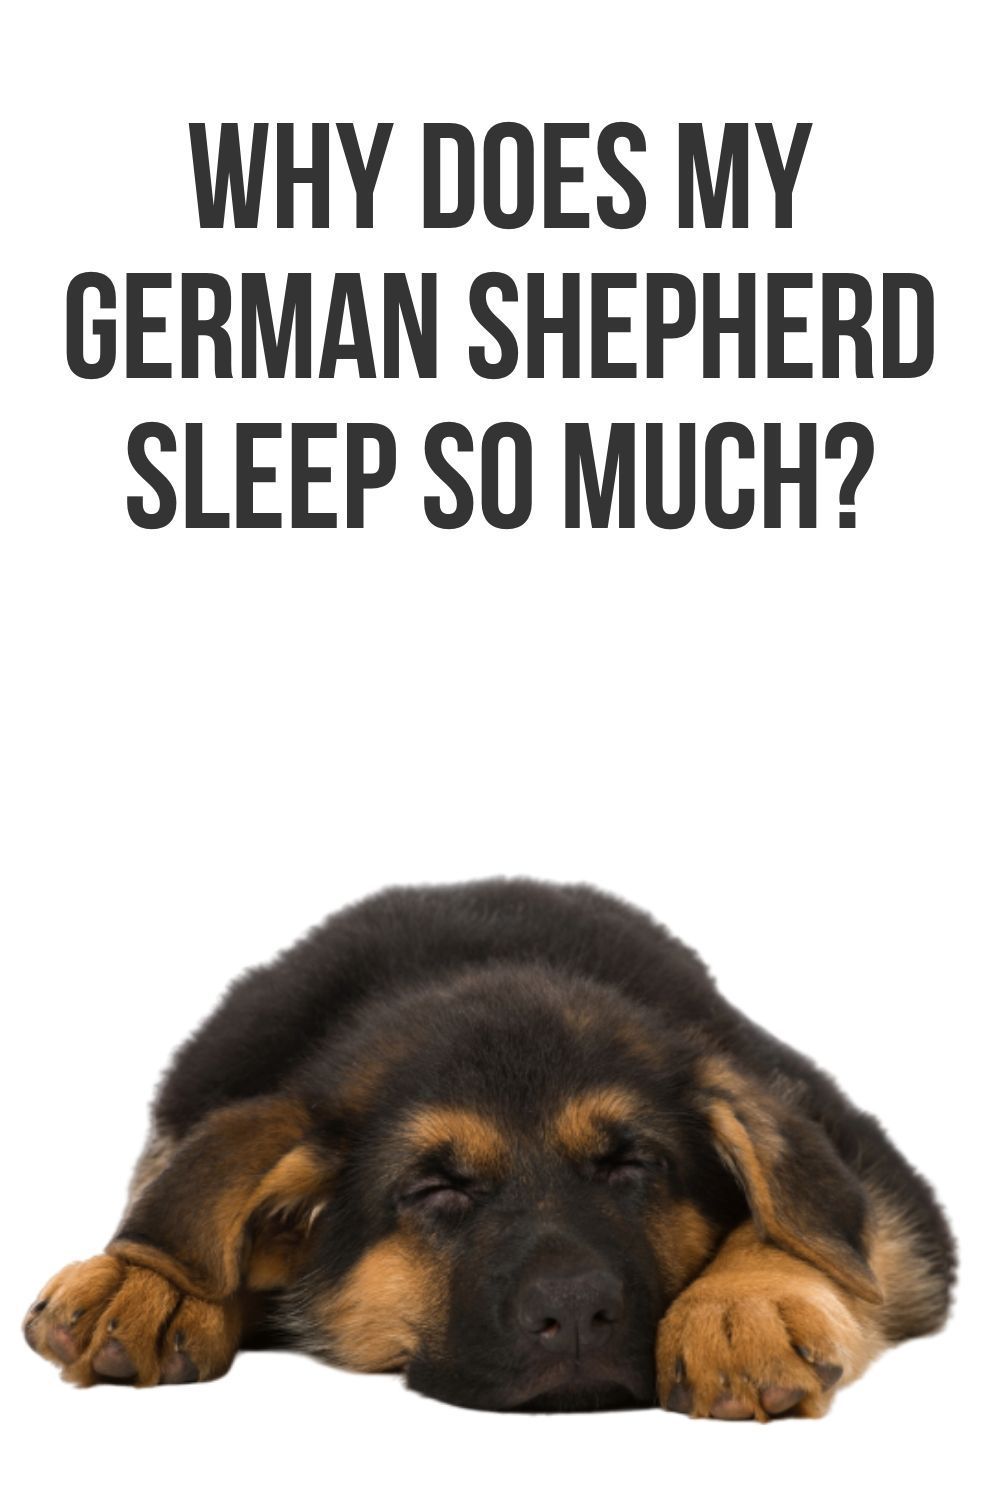 Why does my German Shepherd sleep so much?